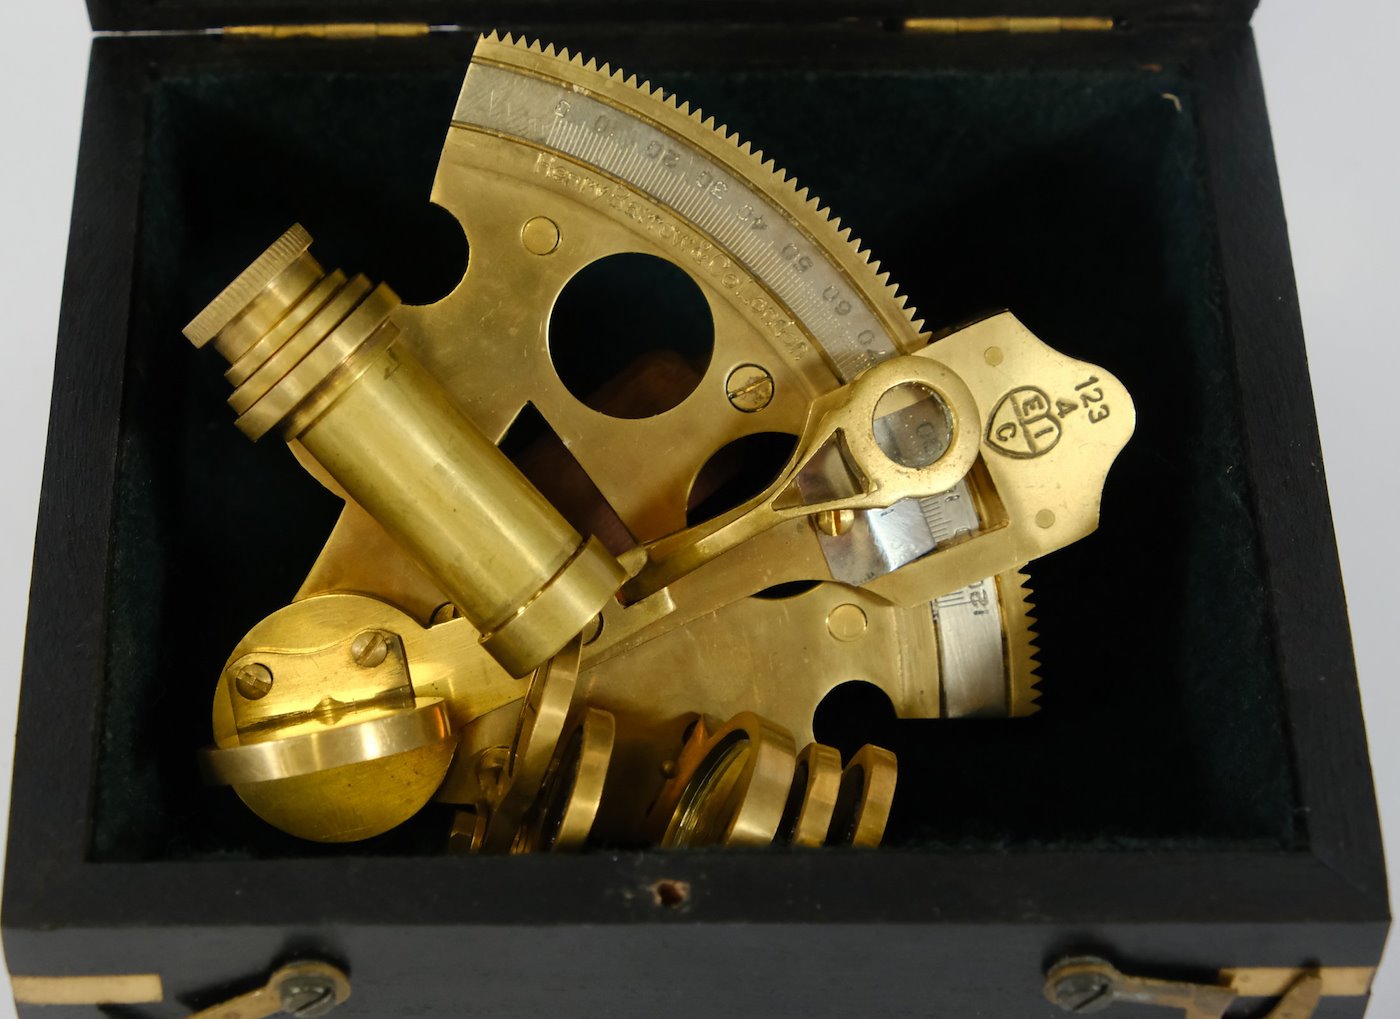 západní Evropa kolem roku 2000 - Námořní sextant